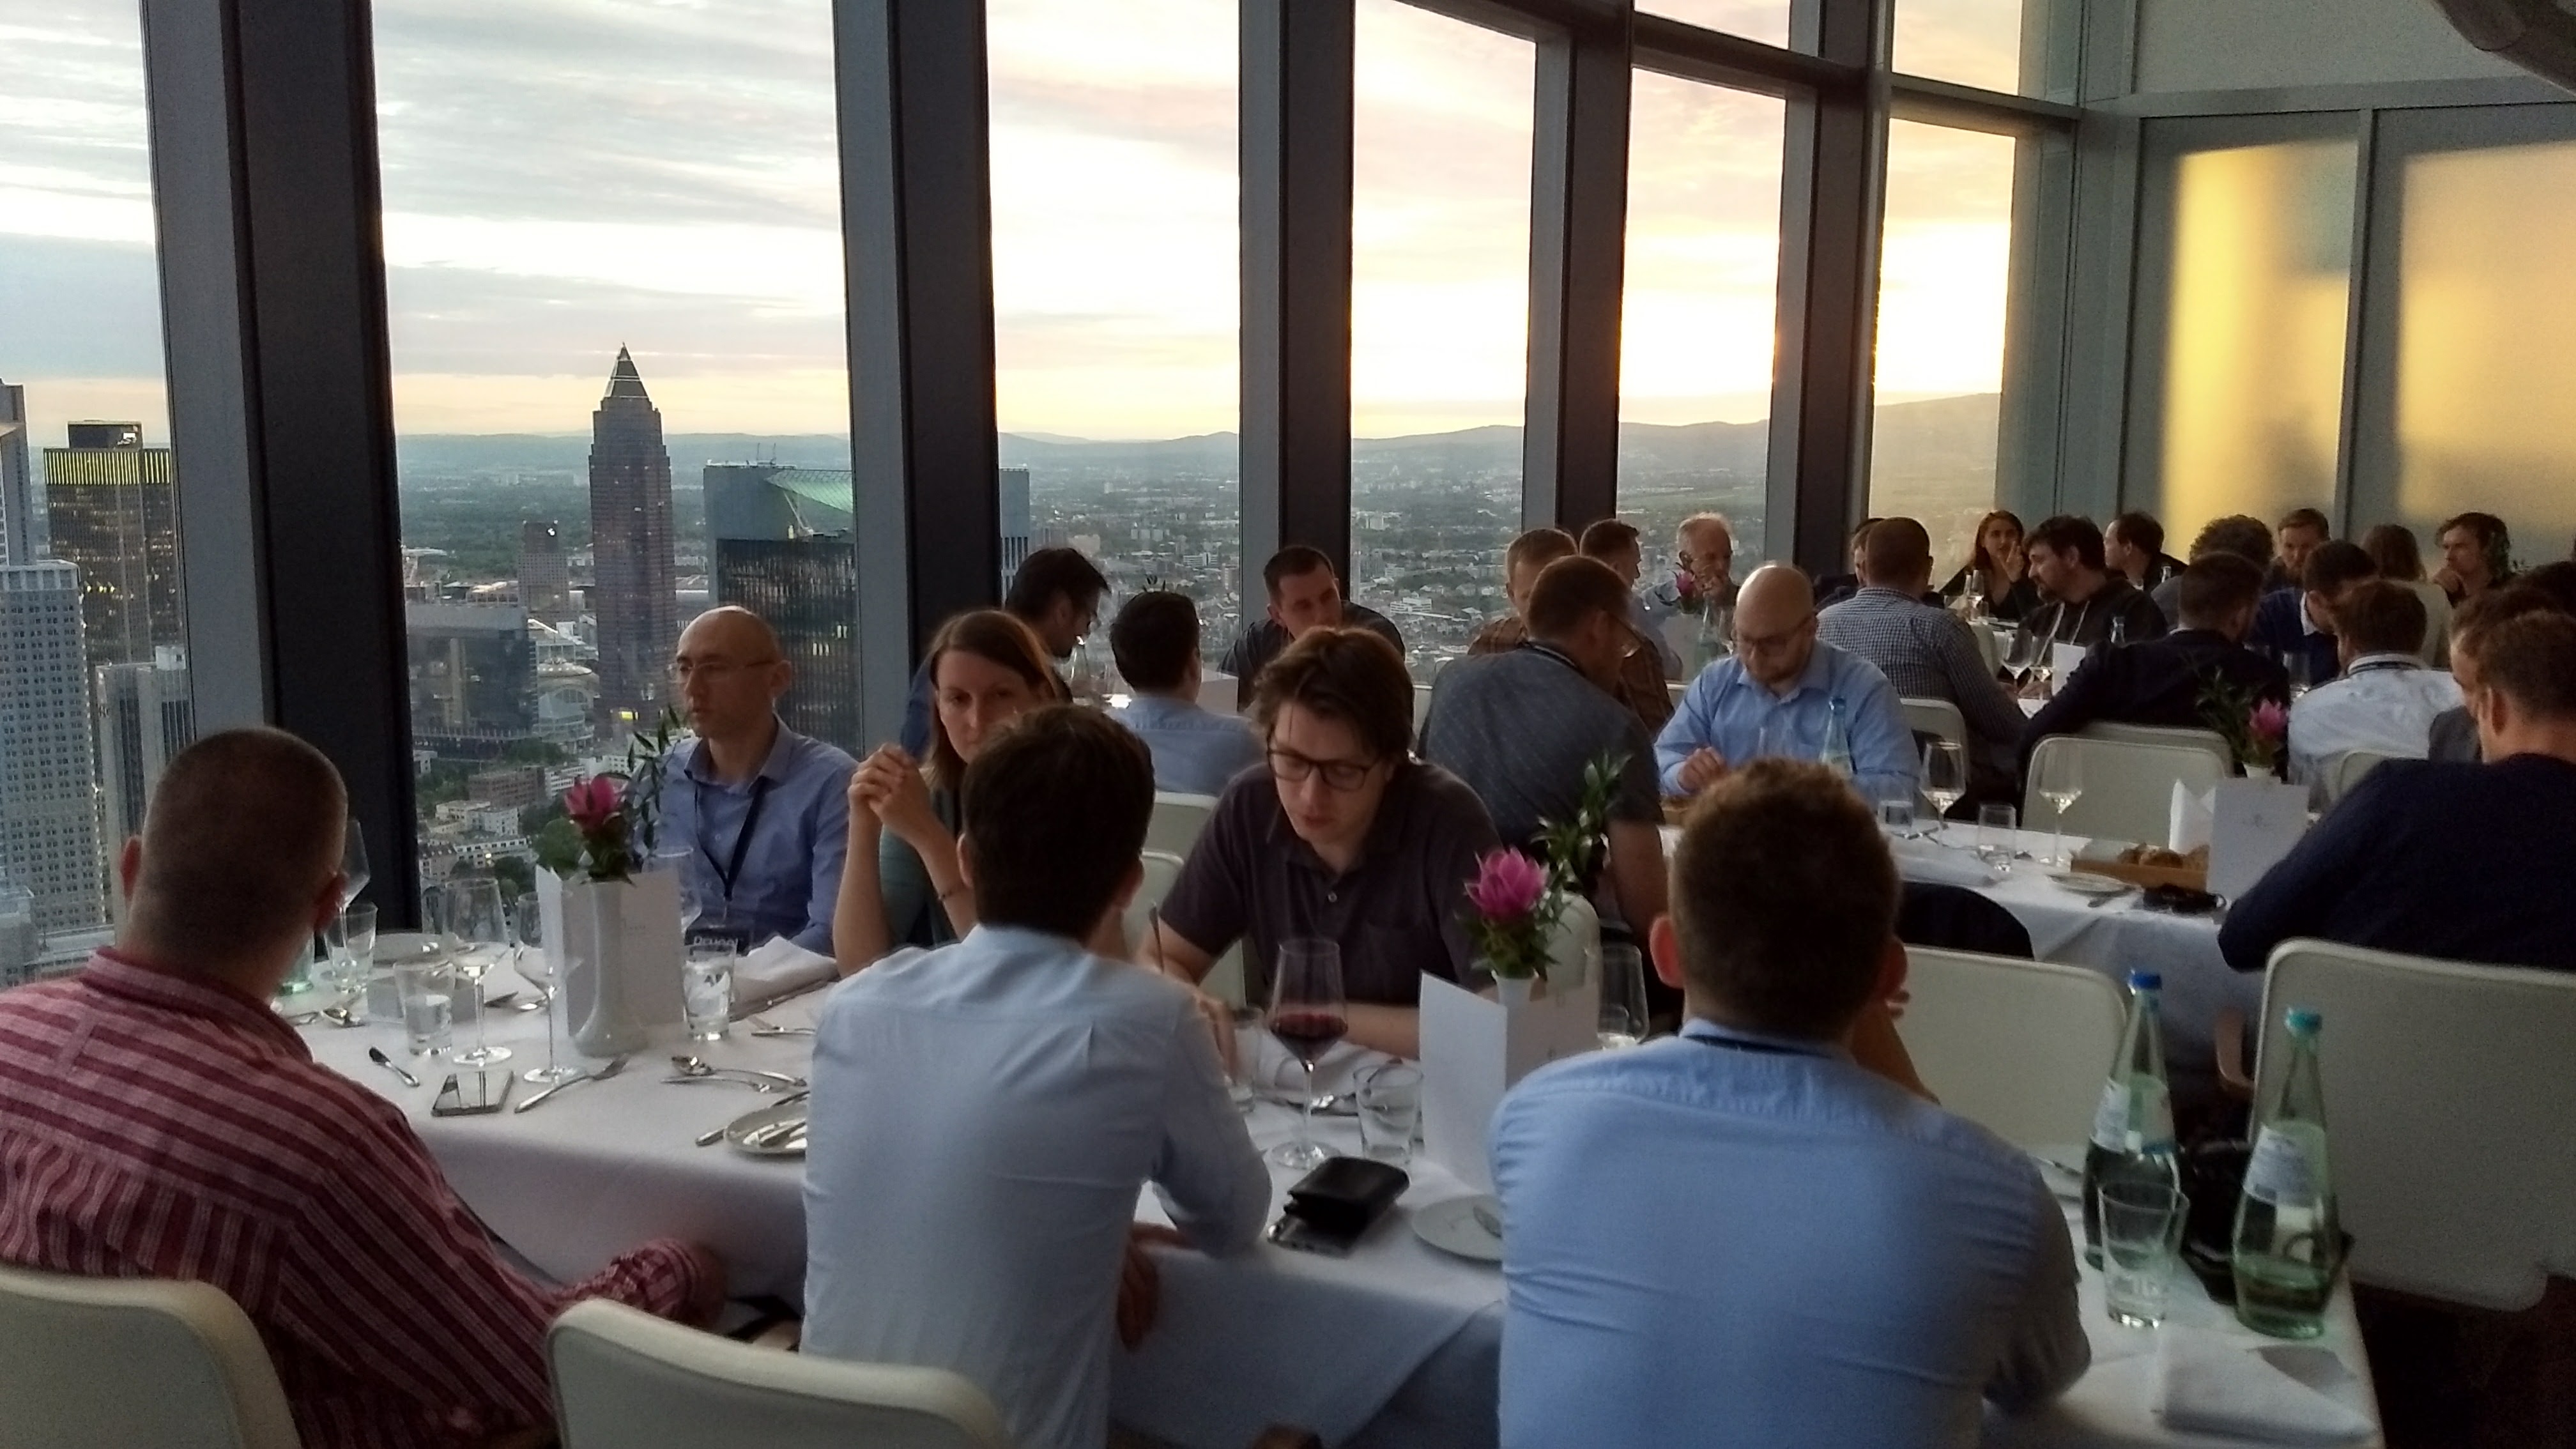 Diner op de 53e verdieping van Main Tower in Frankfurt. Een prachtig uitzicht!